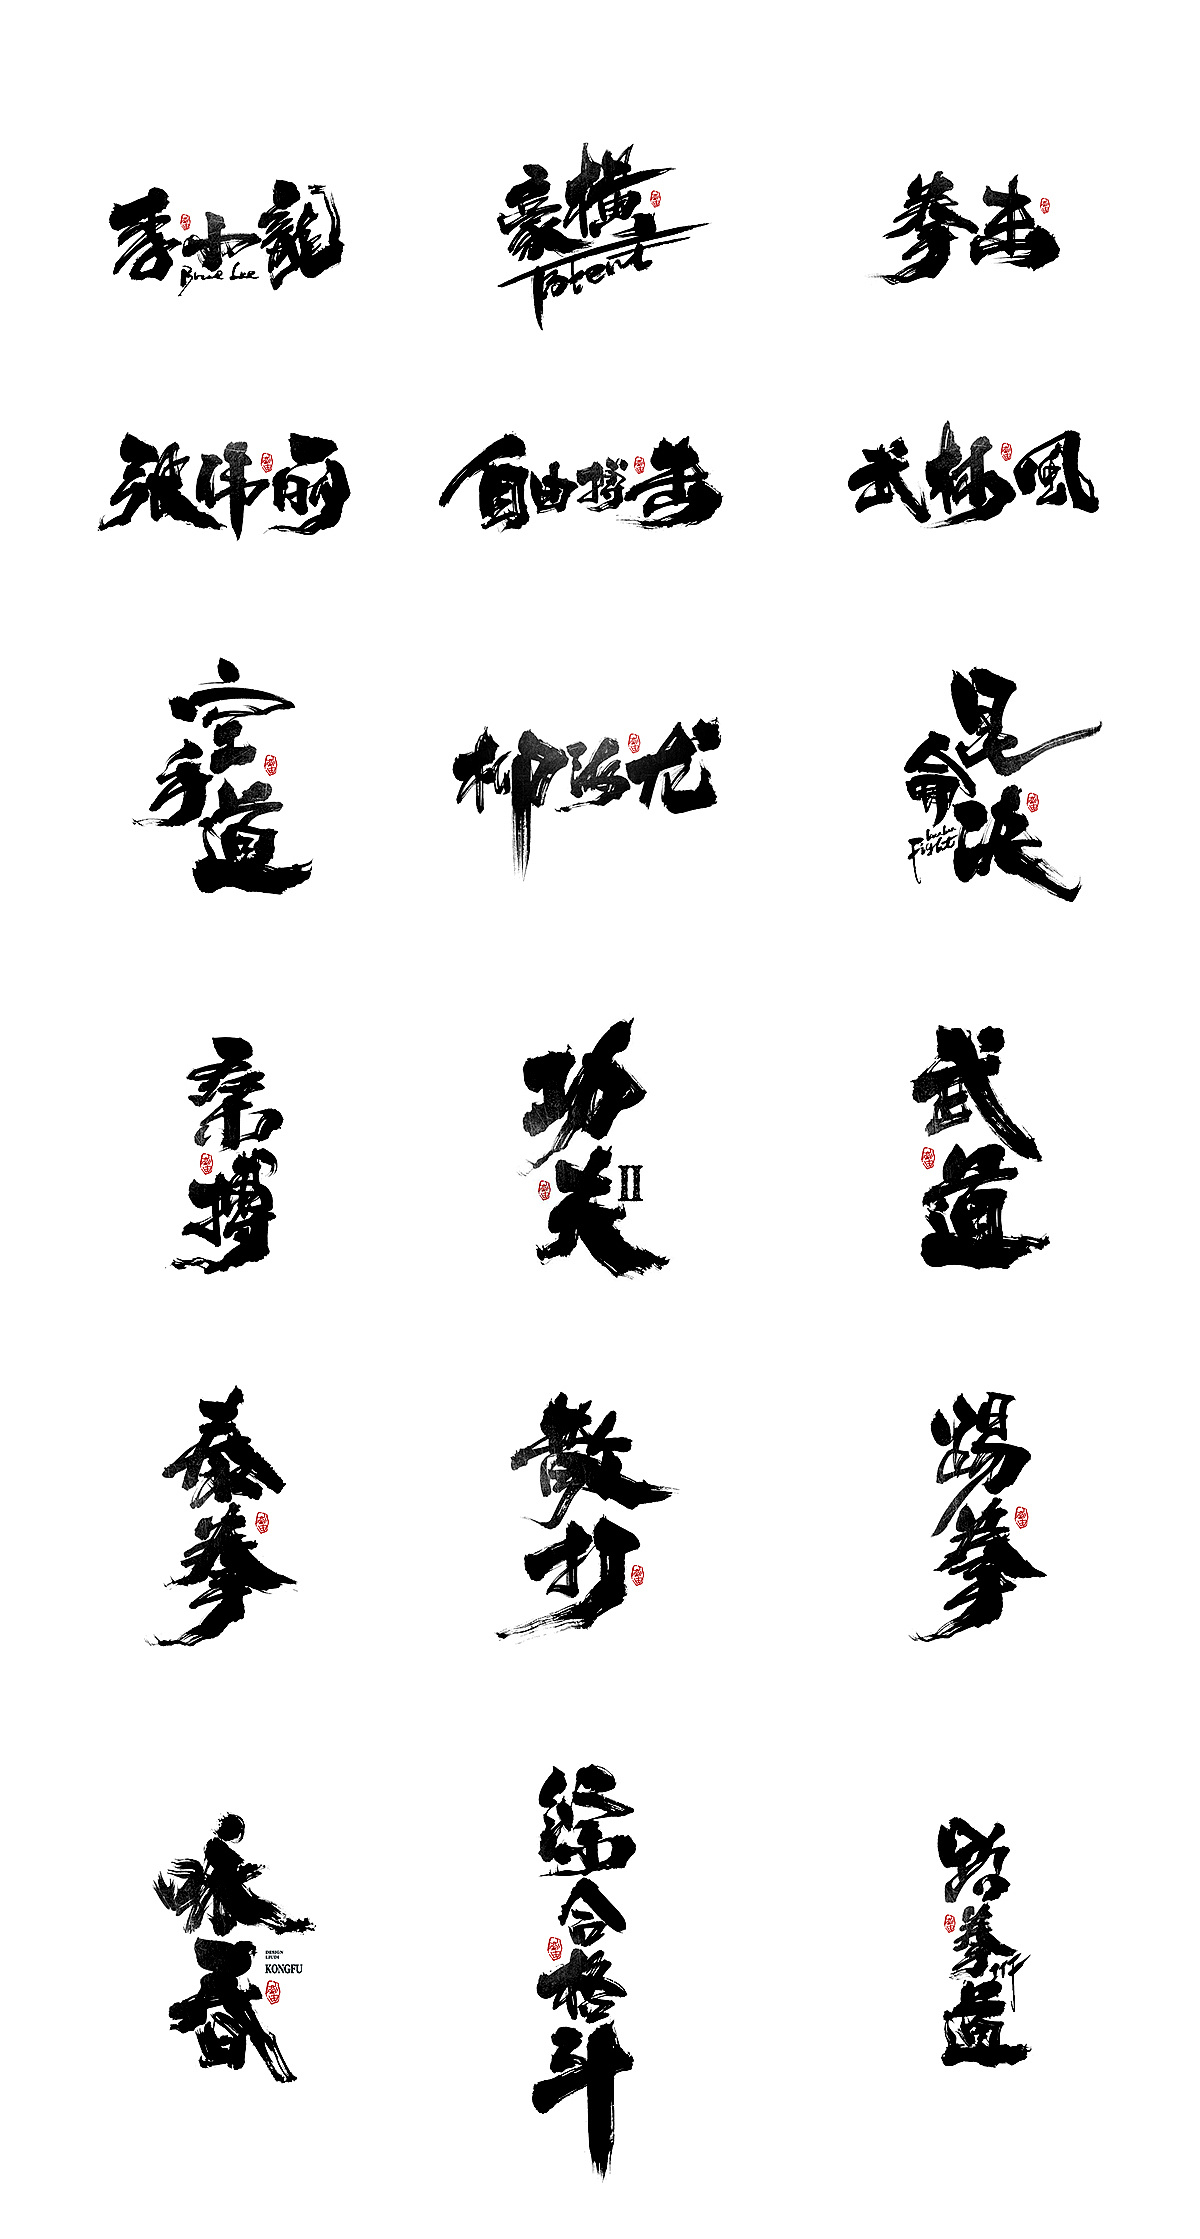 使用纤细手写中文字体 让海报设计体现人文气息